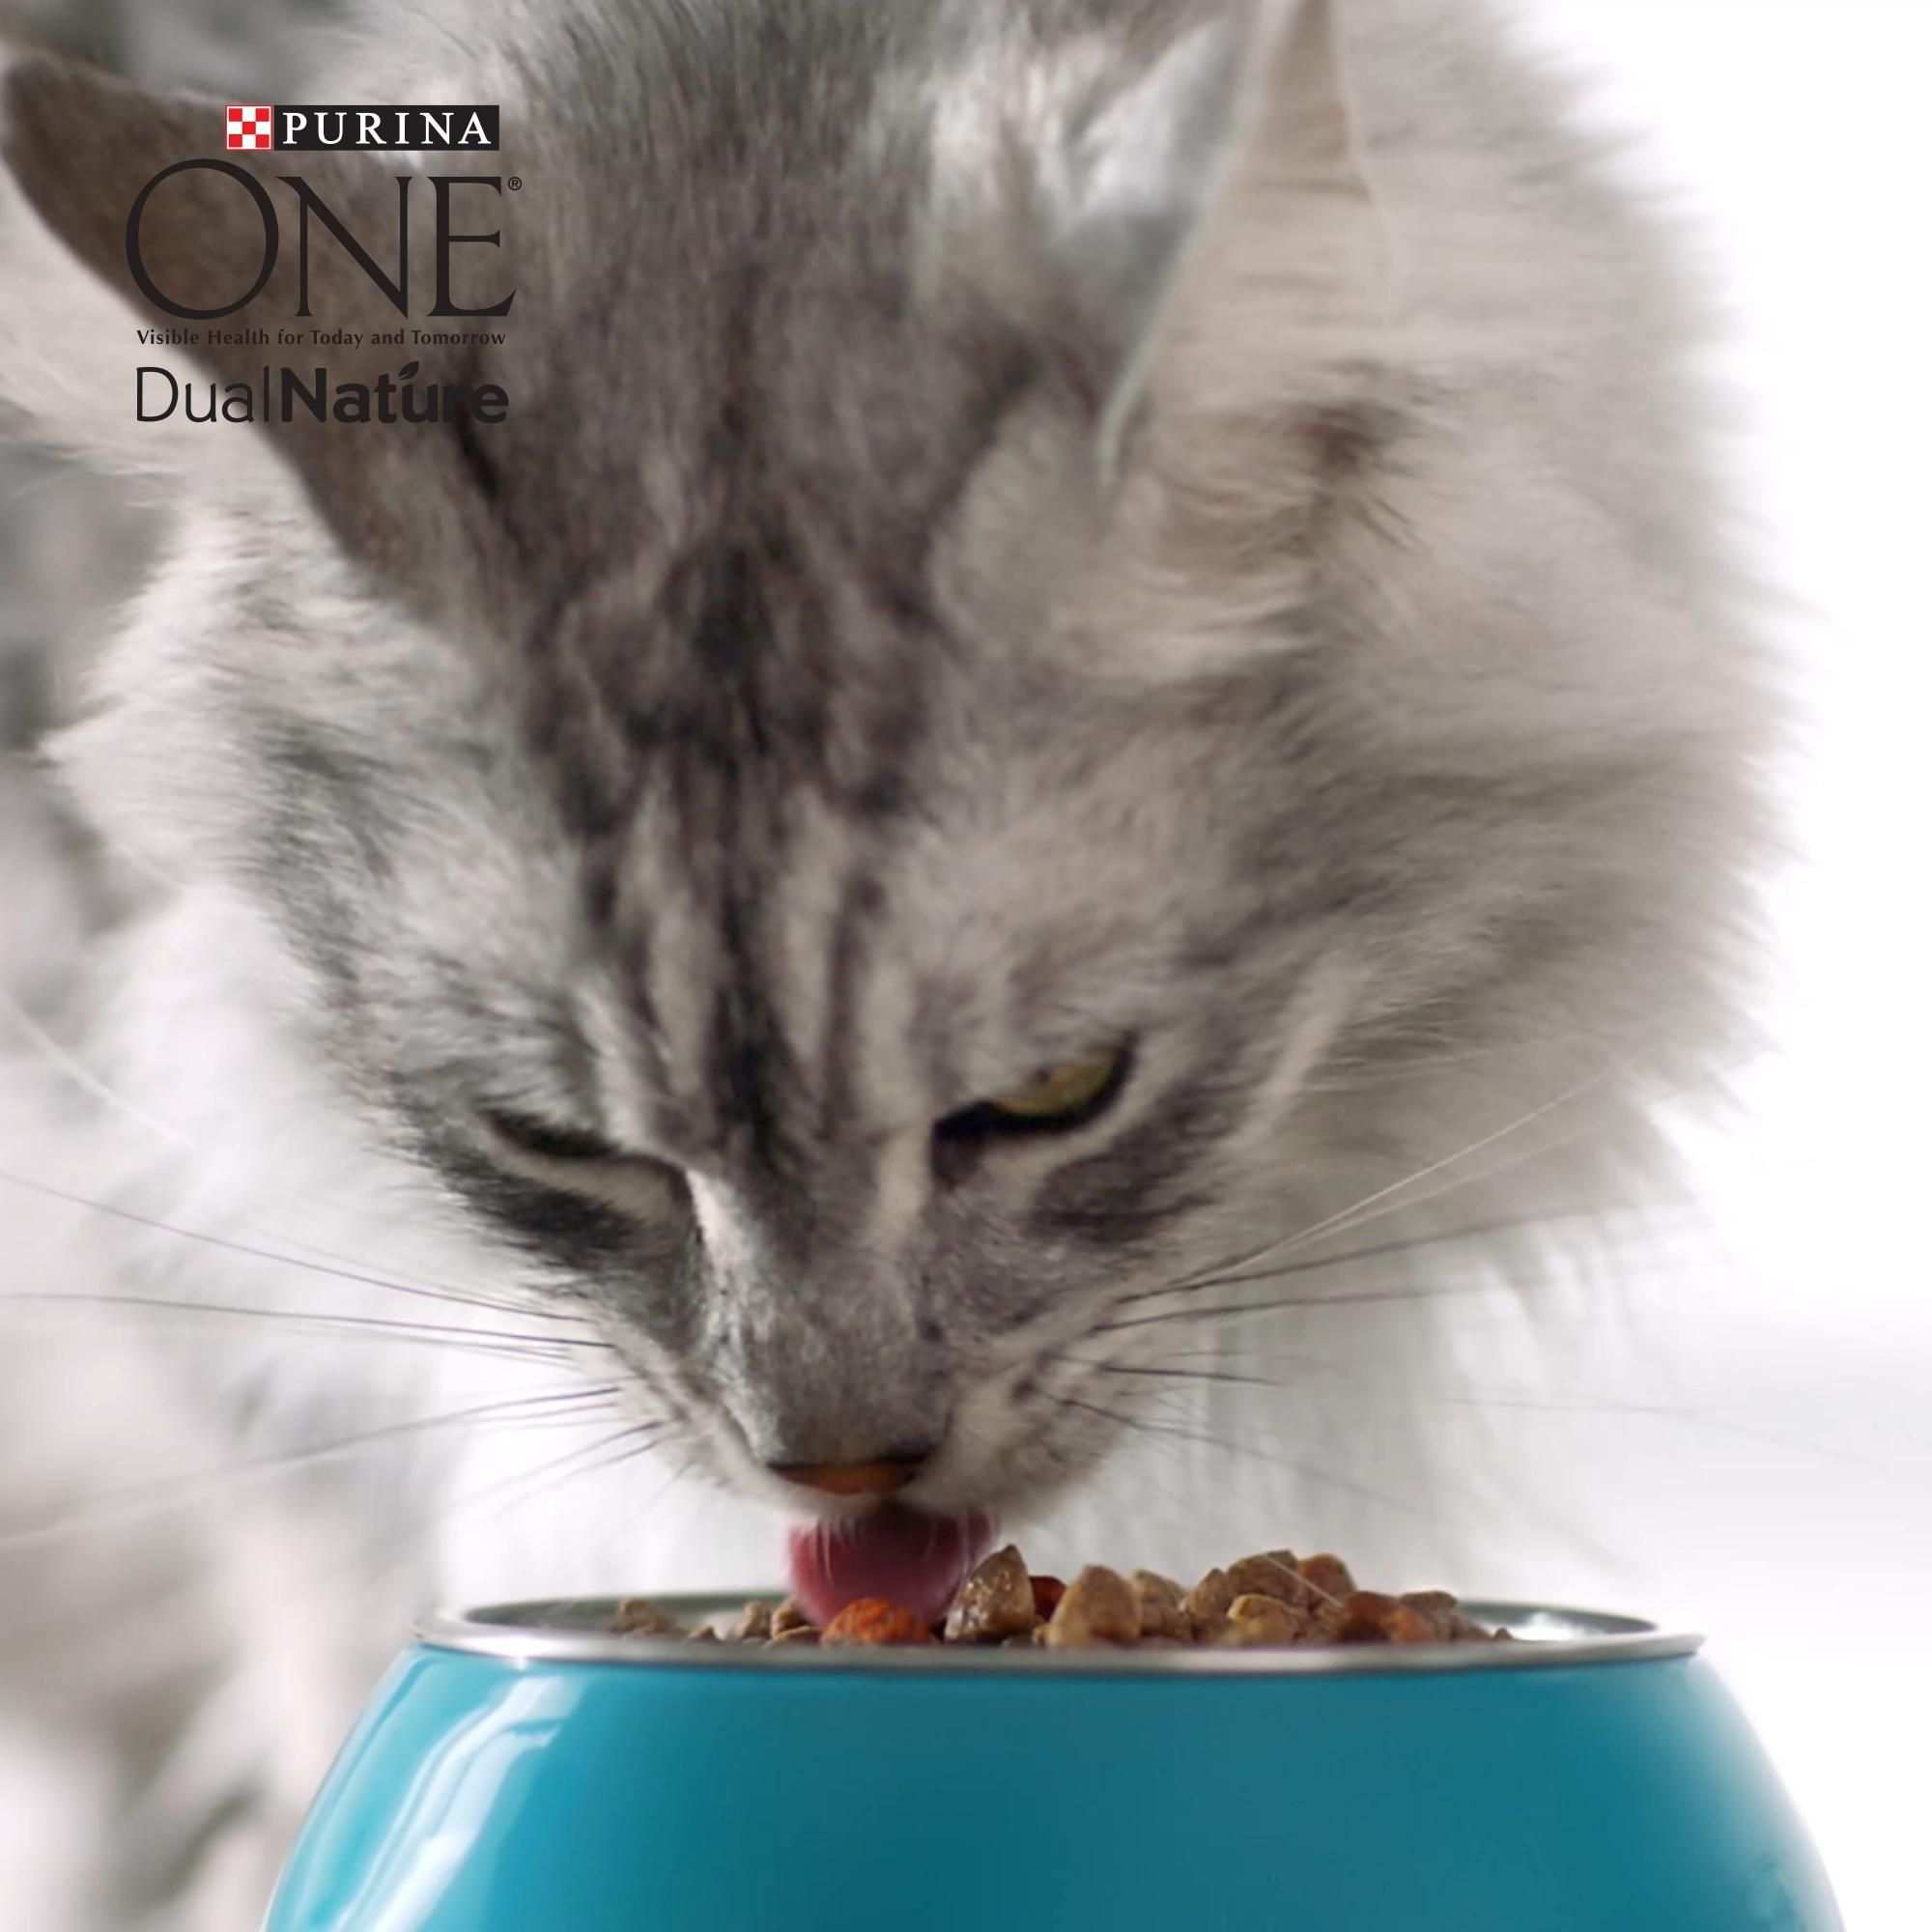 Das Neue Dualnature Mit Cranberry Video In 2020 Katzen Katzen Futter Katzenfutter